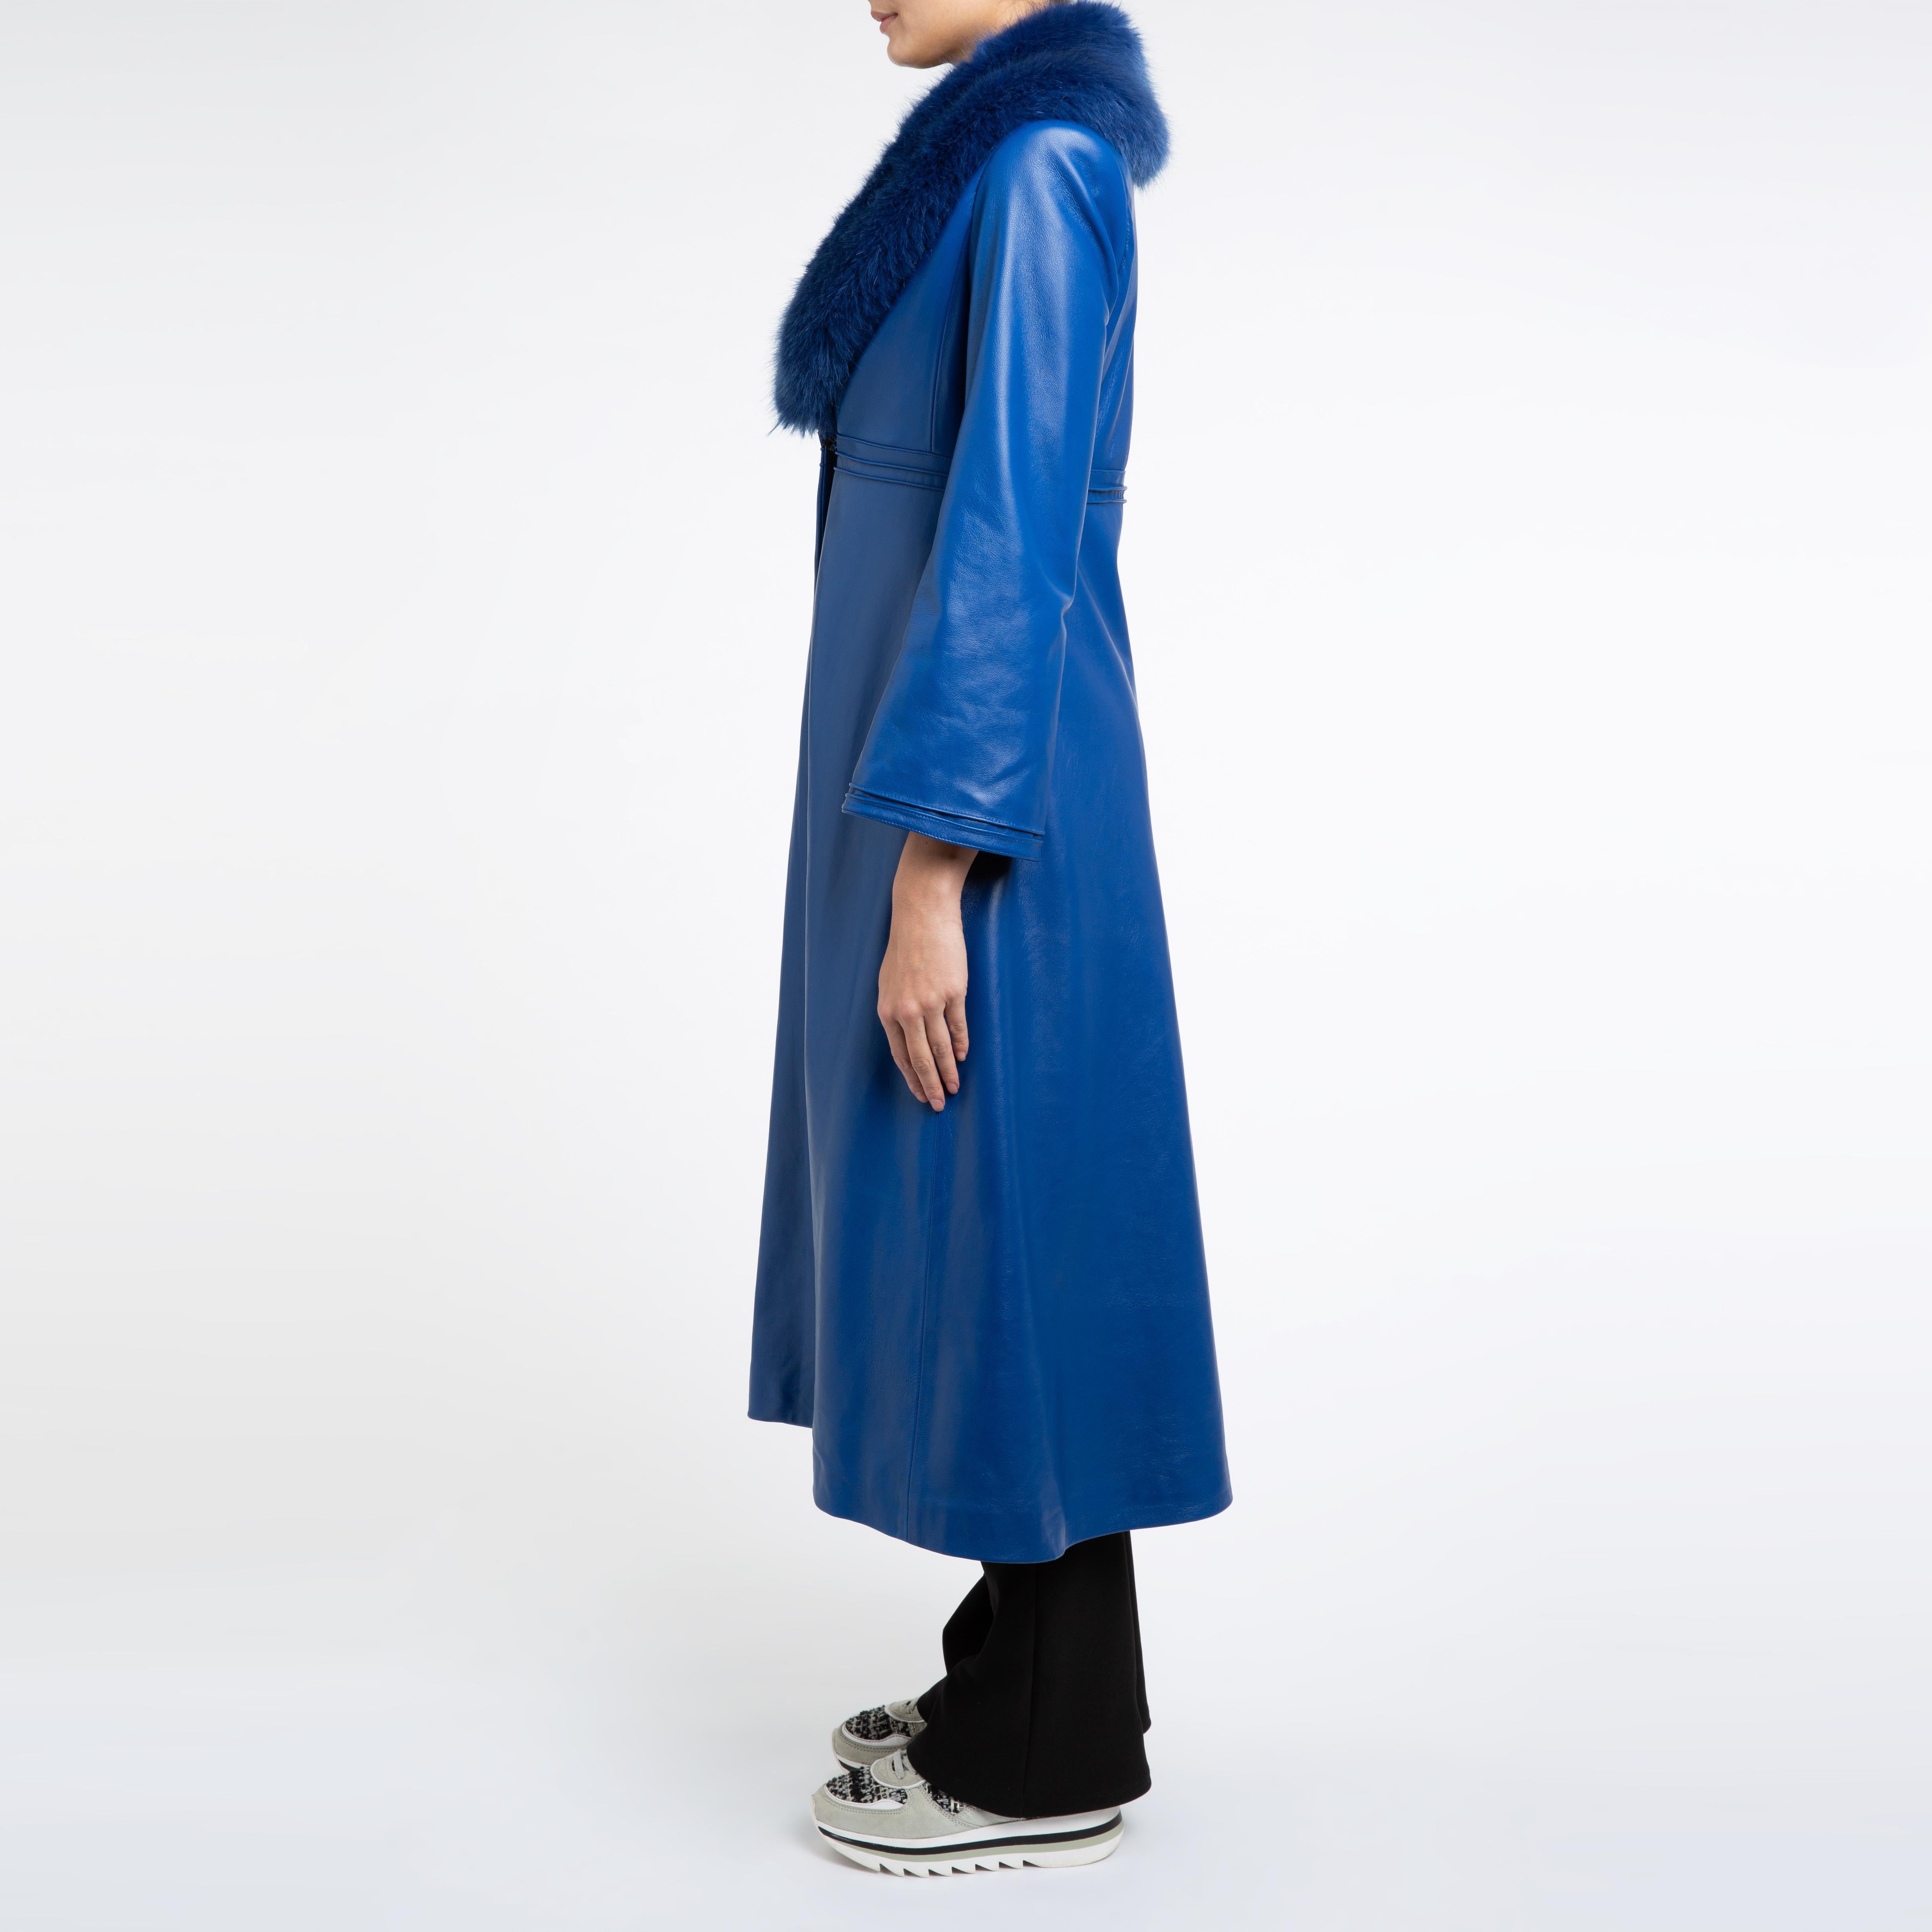 Women's Verheyen London Edward Leather Coat in Blue with Faux Fur - Size uk 8  For Sale